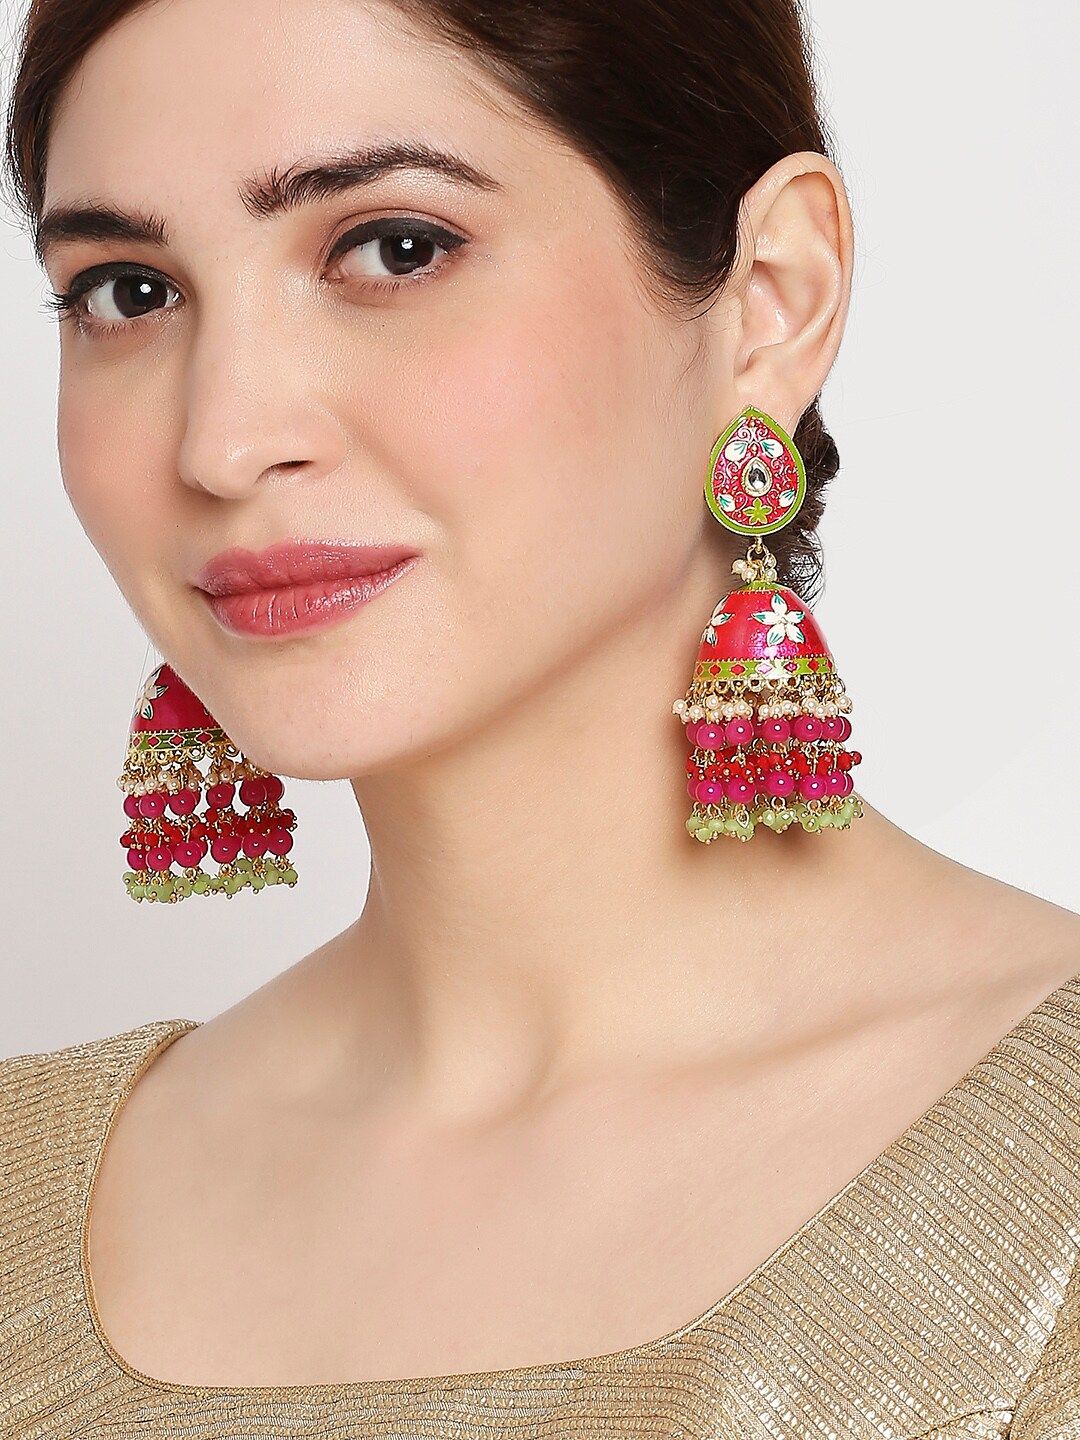 OOMPH Pink & Green Dome Shaped Meenakari Enamelled Kundan Studded Jhumkas Earrings Price in India